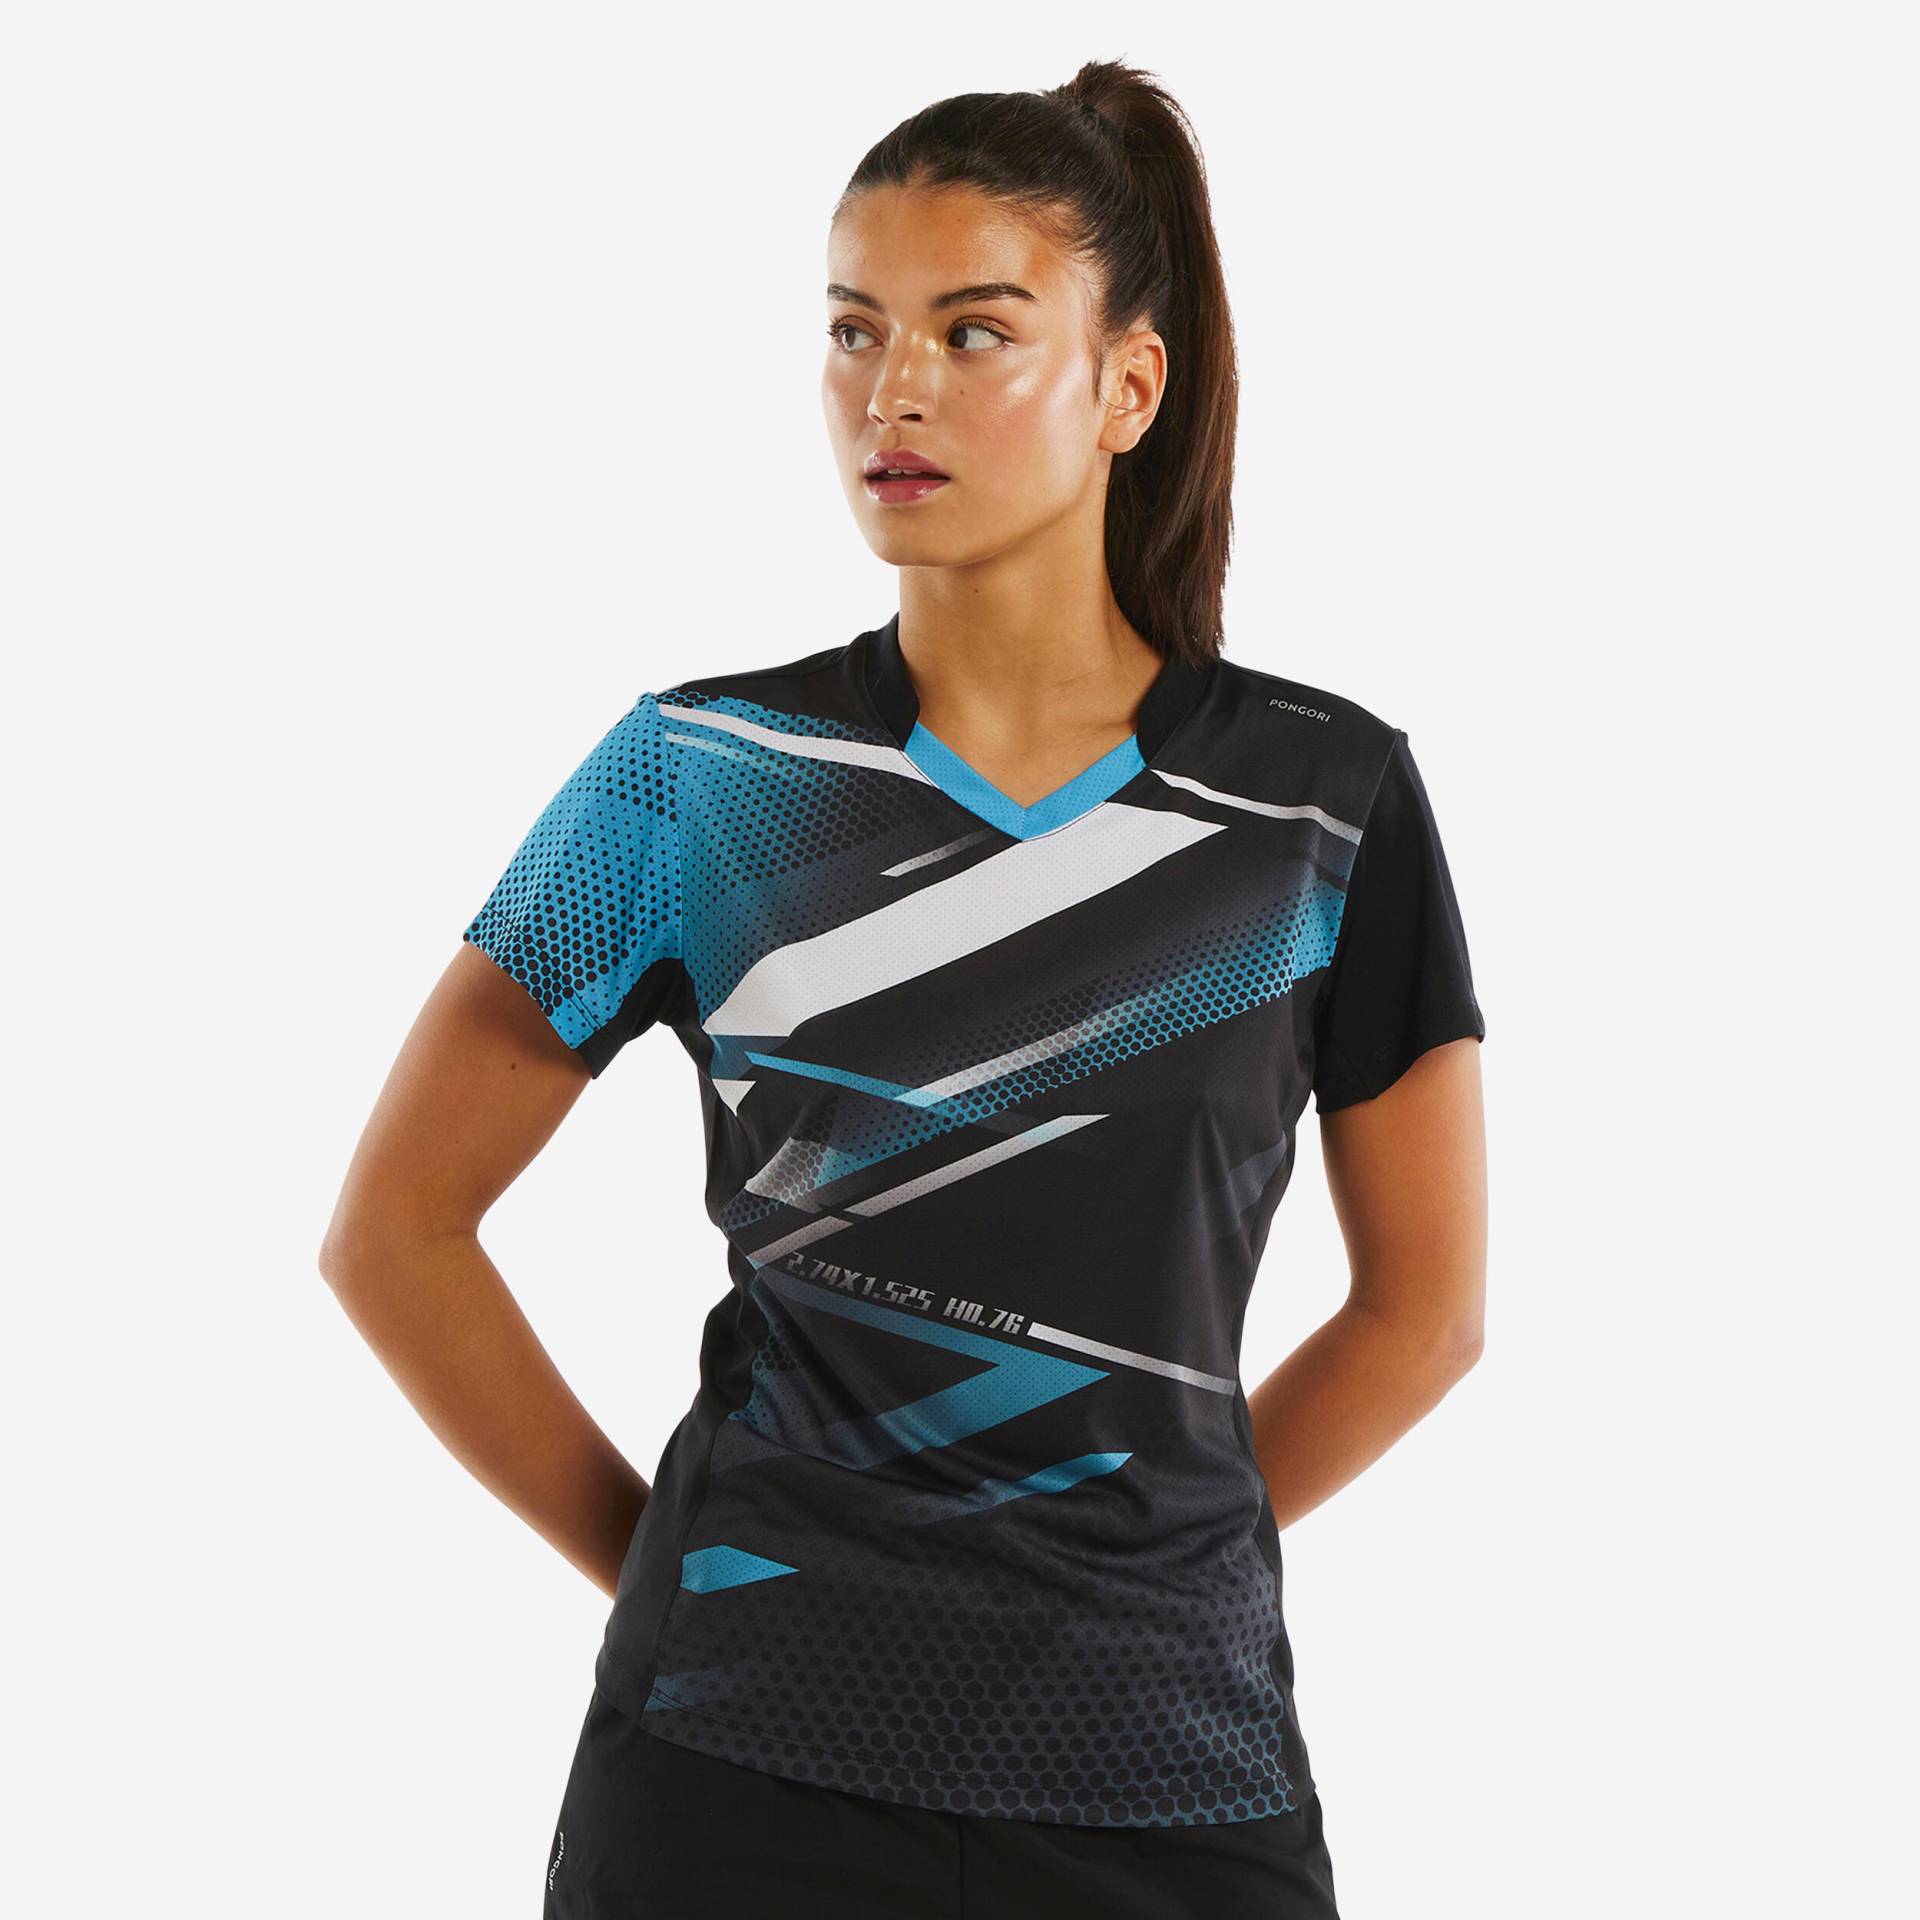 Damen Tischtennis T-Shirt - TTP560 schwarz/blau von PONGORI